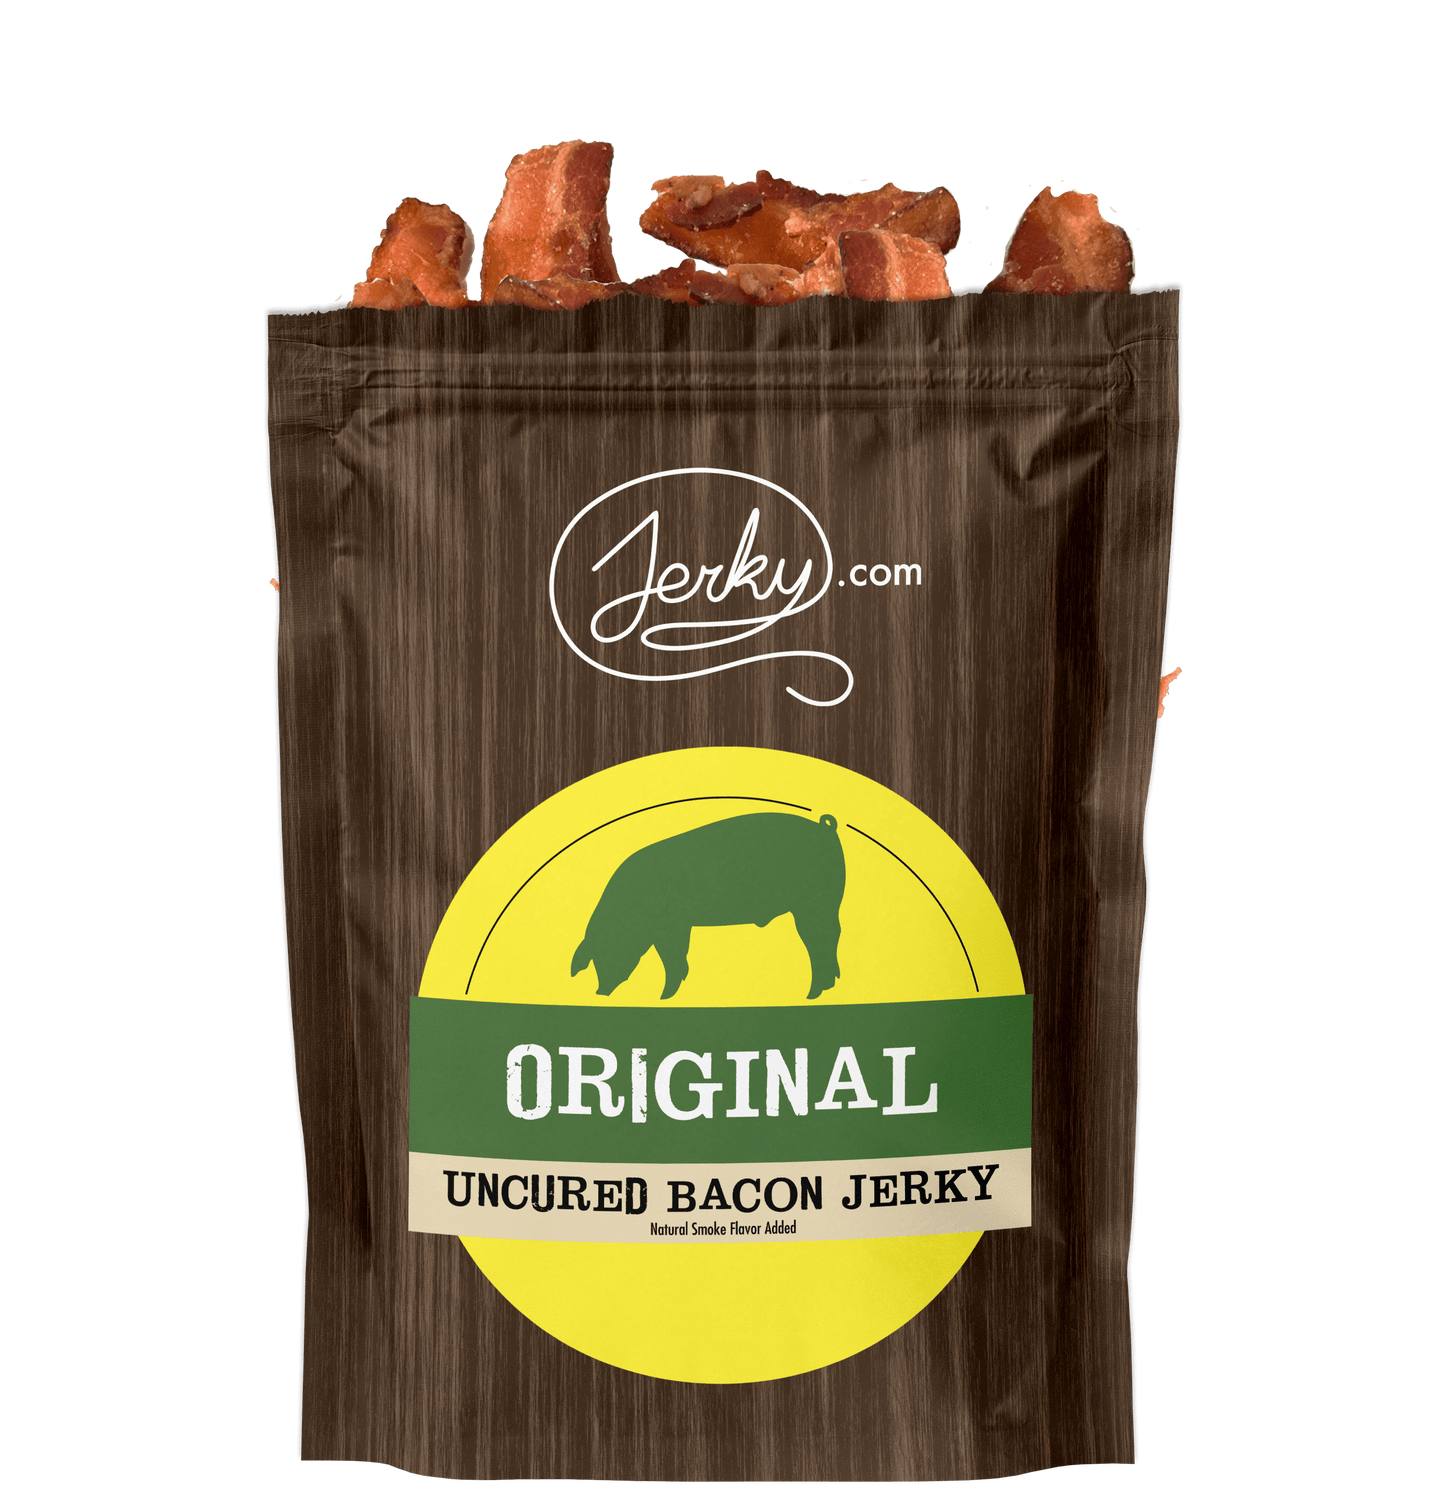 Bacon Jerky - Original by Jerky.com